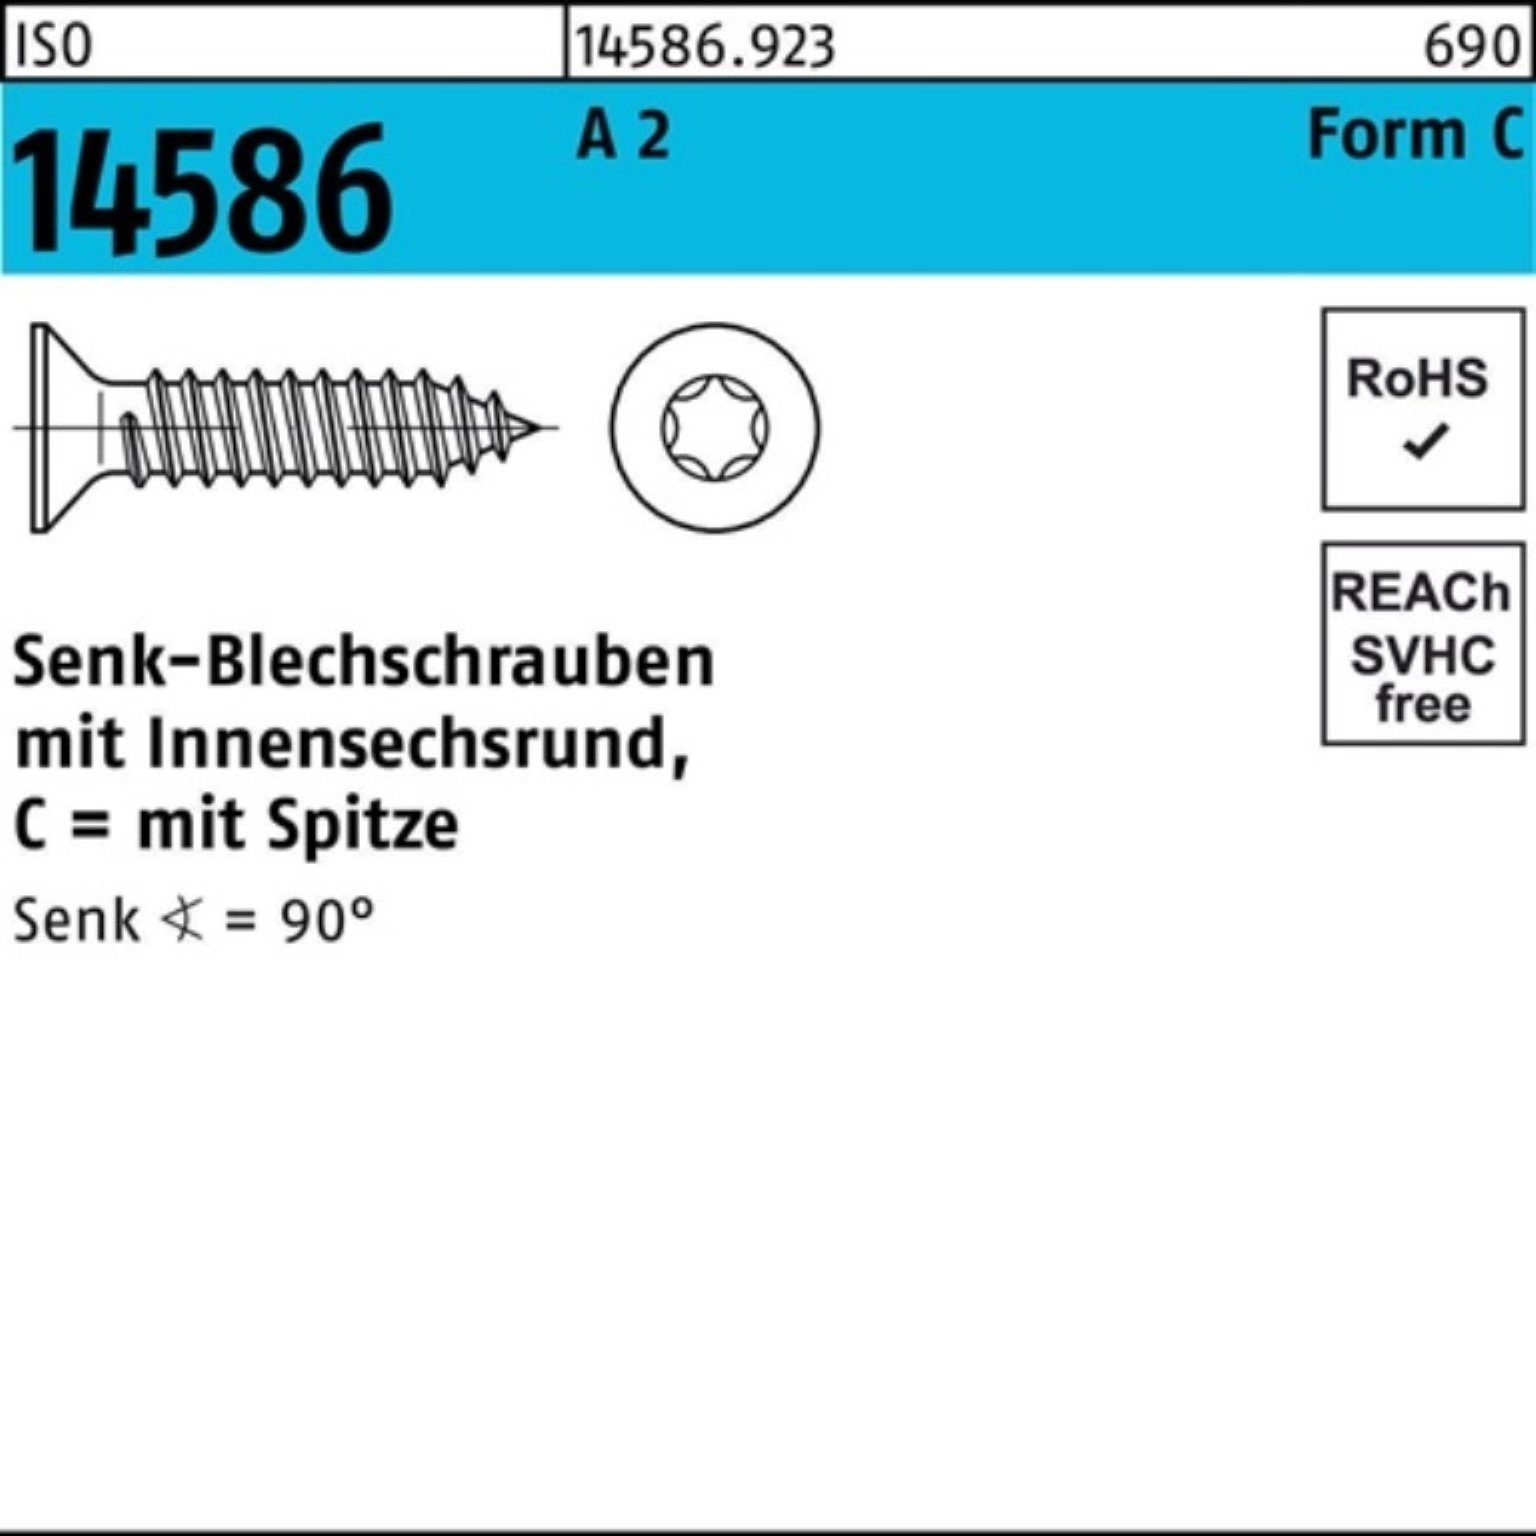 Reyher Schraube 1000er Pack Senkblechschraube T15 ISR/Spitze 14586 A -C 19 3,5x 2 ISO